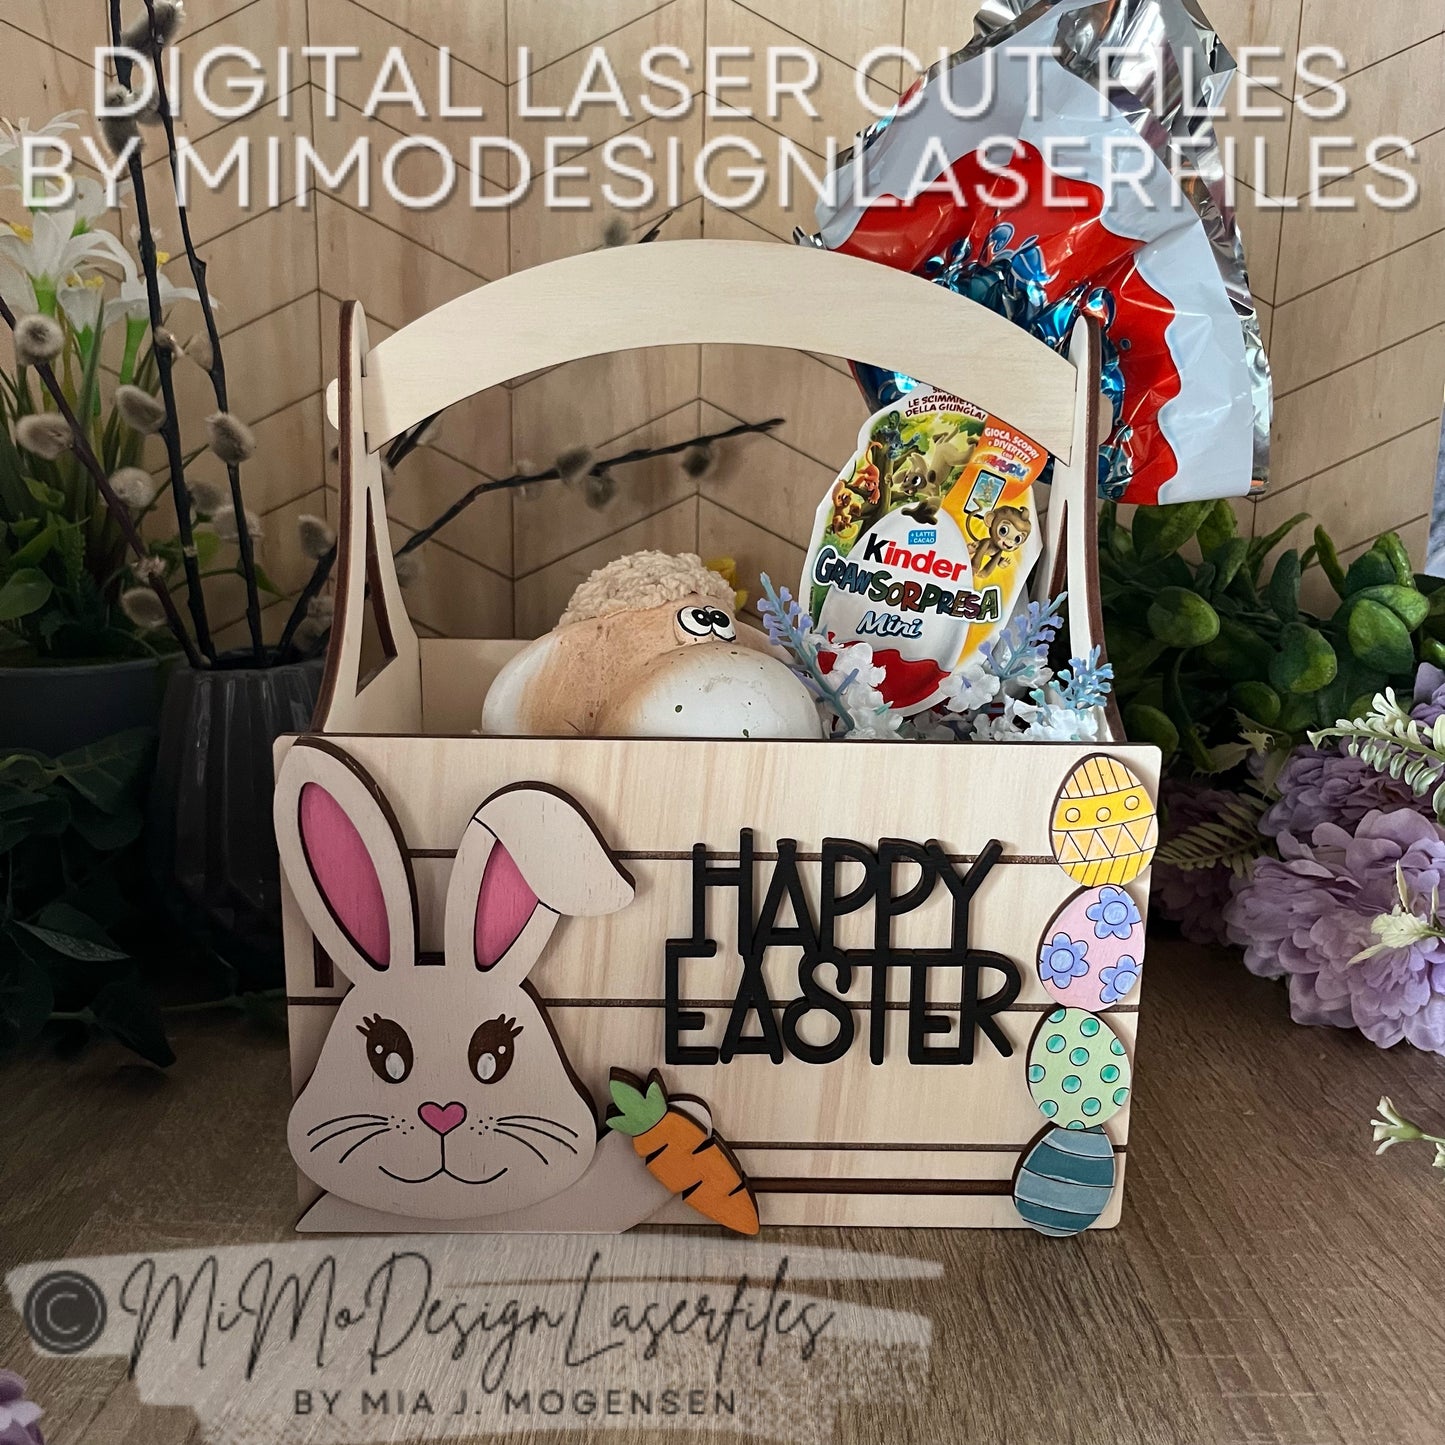 3D Easter Bunny 3in1 Basket for gifts, Kinder Joy and regular chocolate eggs - Versatile Design